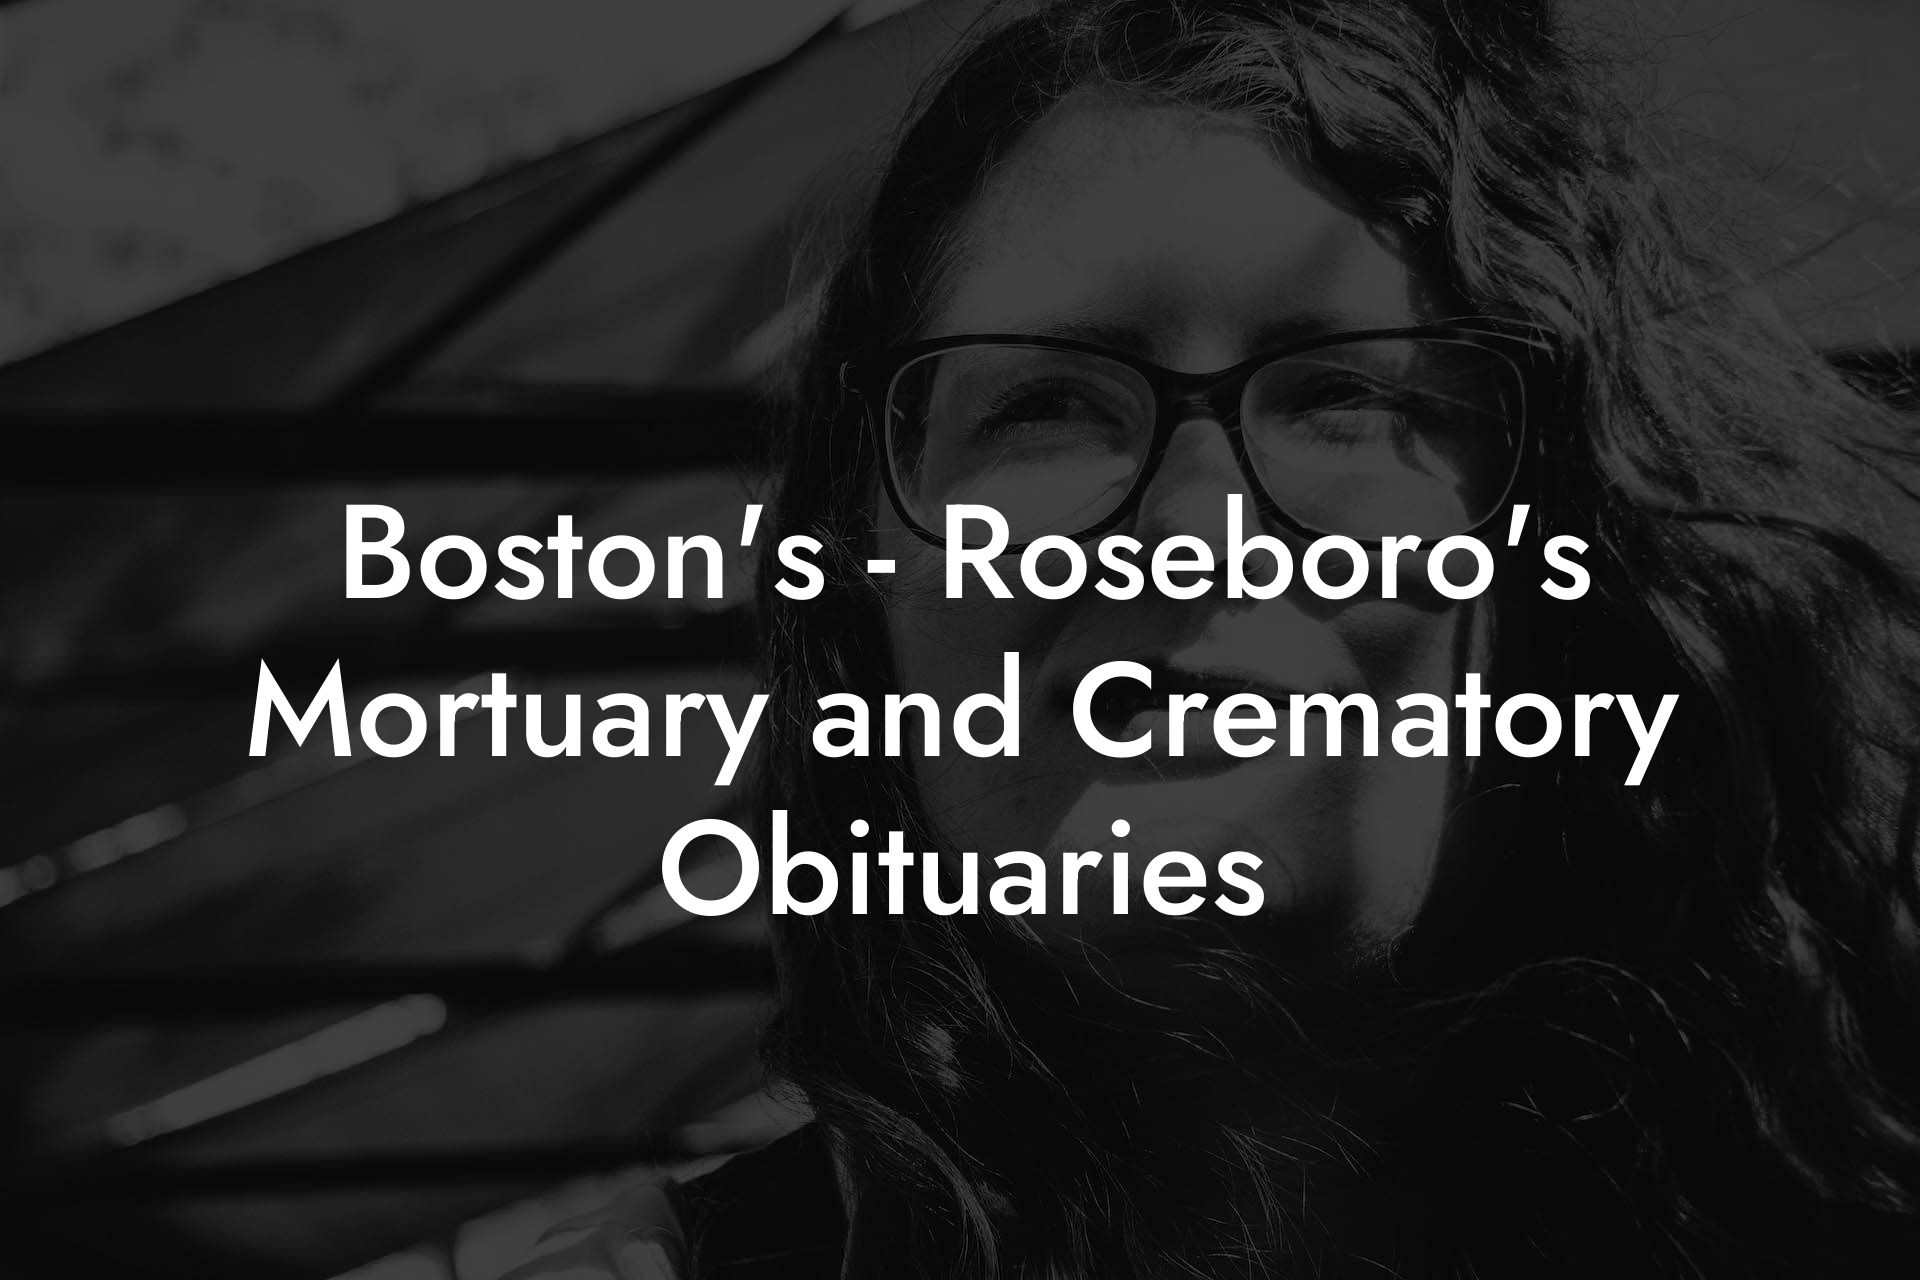 Boston's - Roseboro's Mortuary and Crematory Obituaries